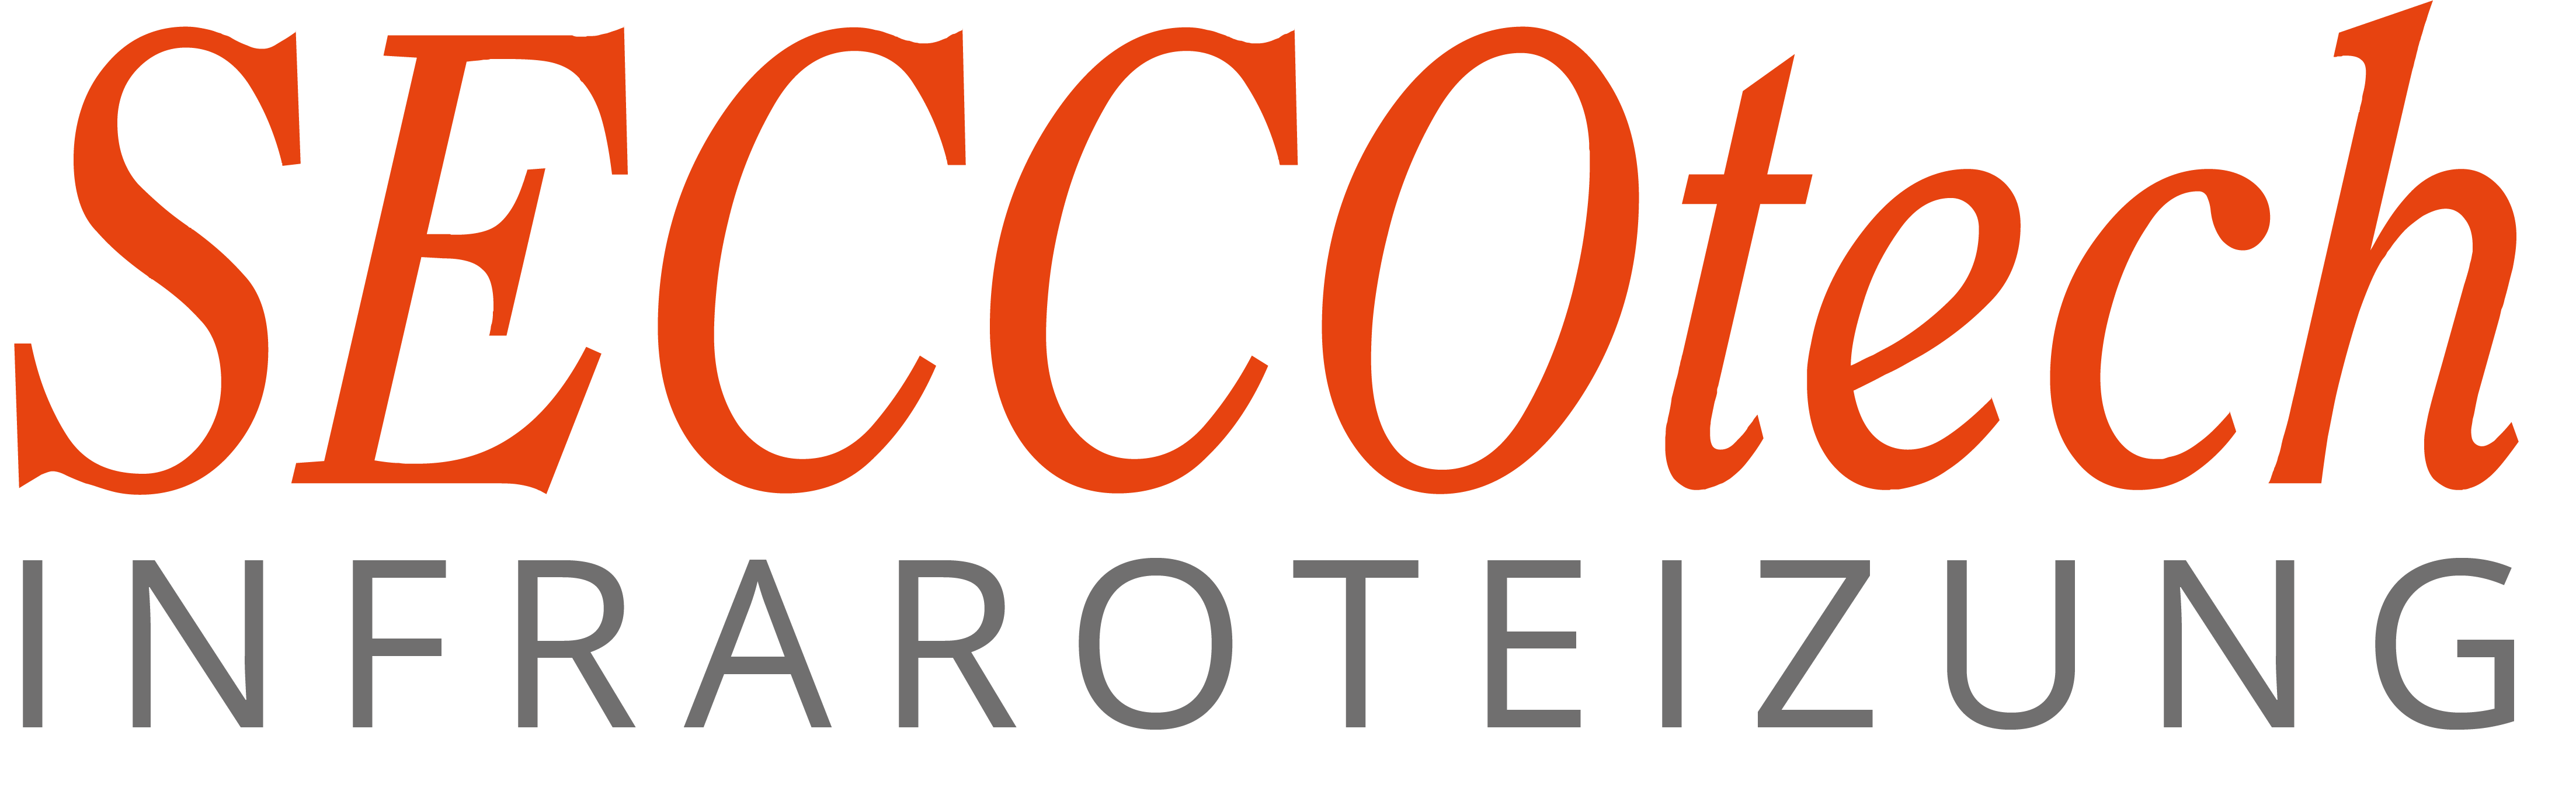 Logo Seccotech